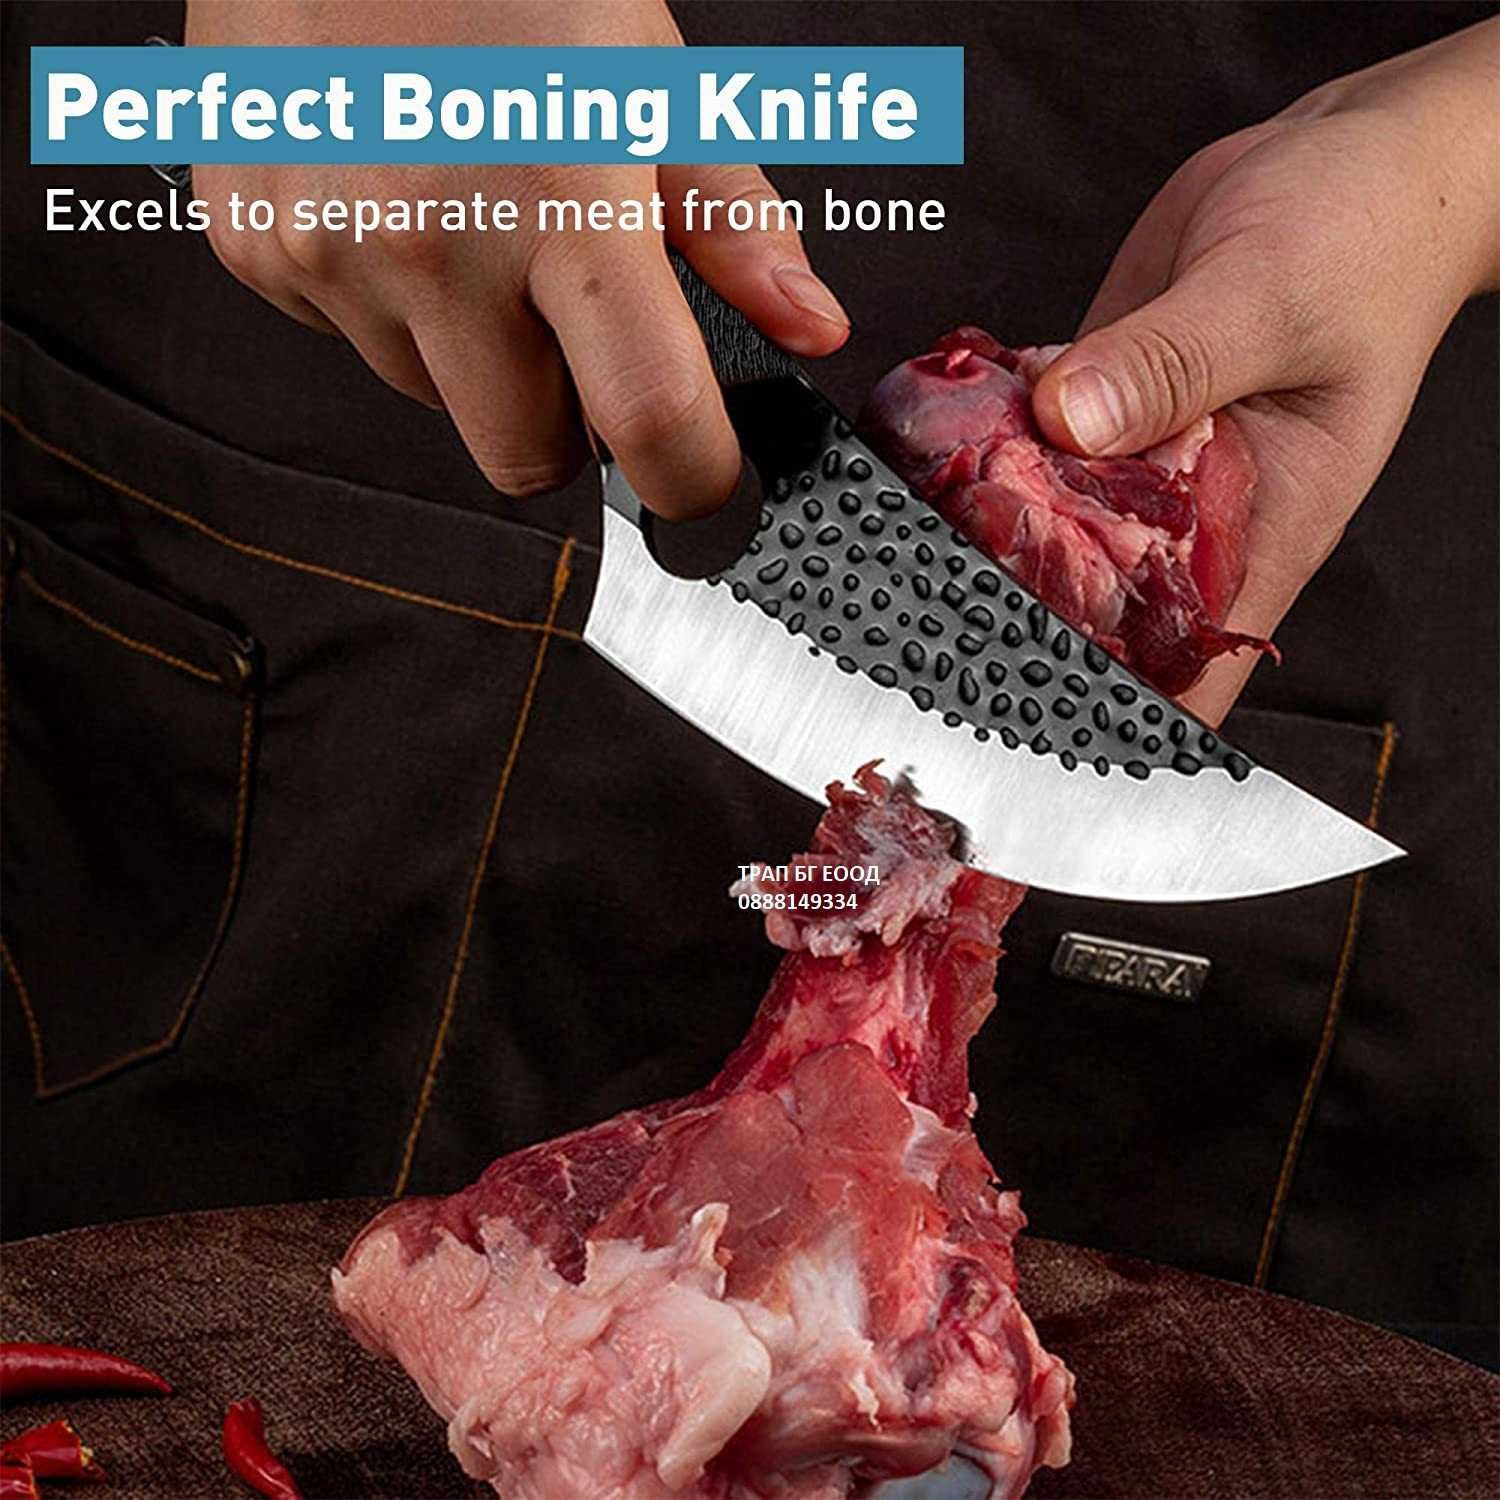 Кухненски нож KT-14 Готварски нож за универсална употреба кожена кания